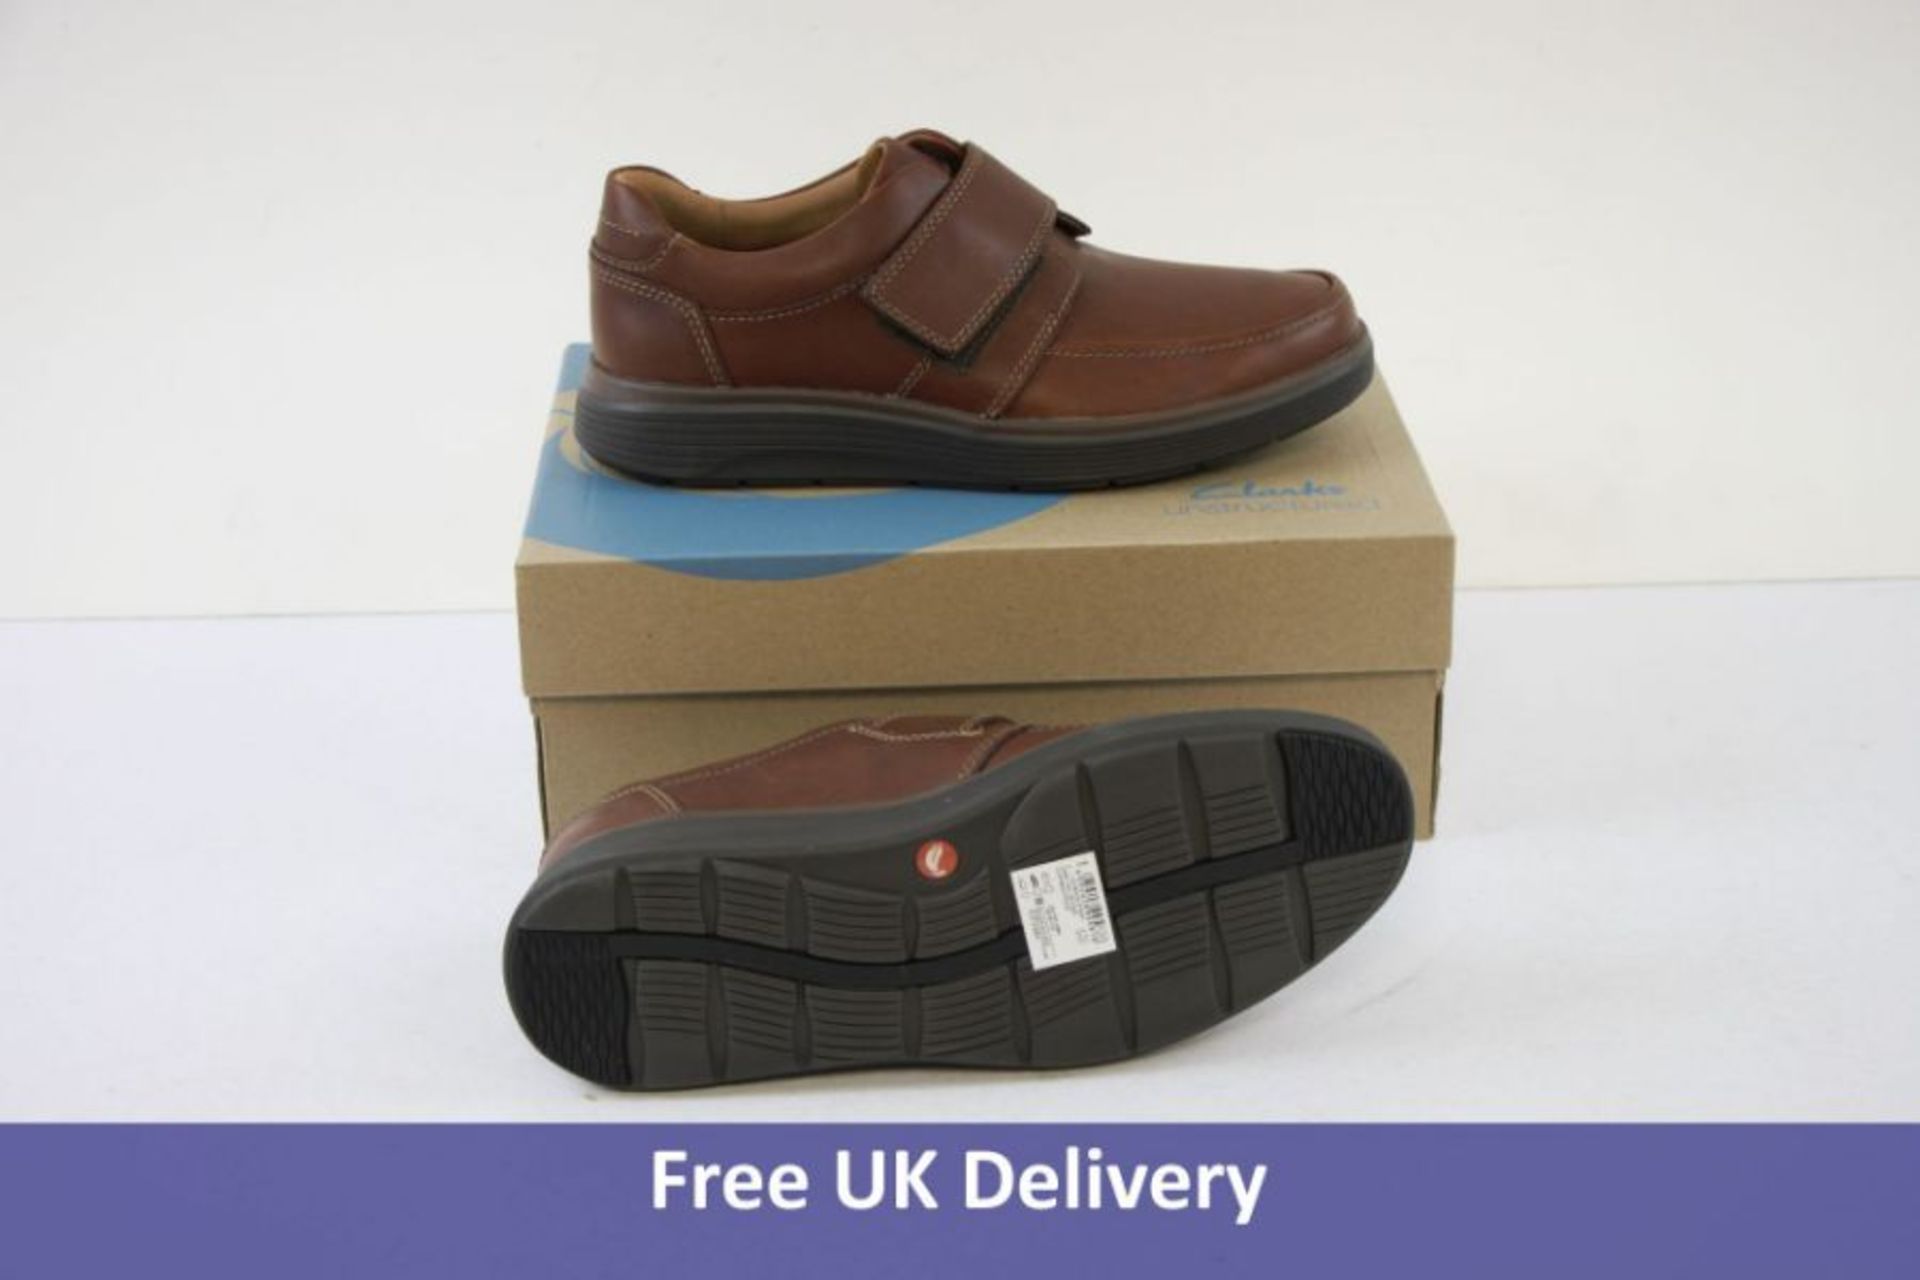 Clarks Men's Un Abode Strap Leather Shoes, Dark Tan, UK 7.5